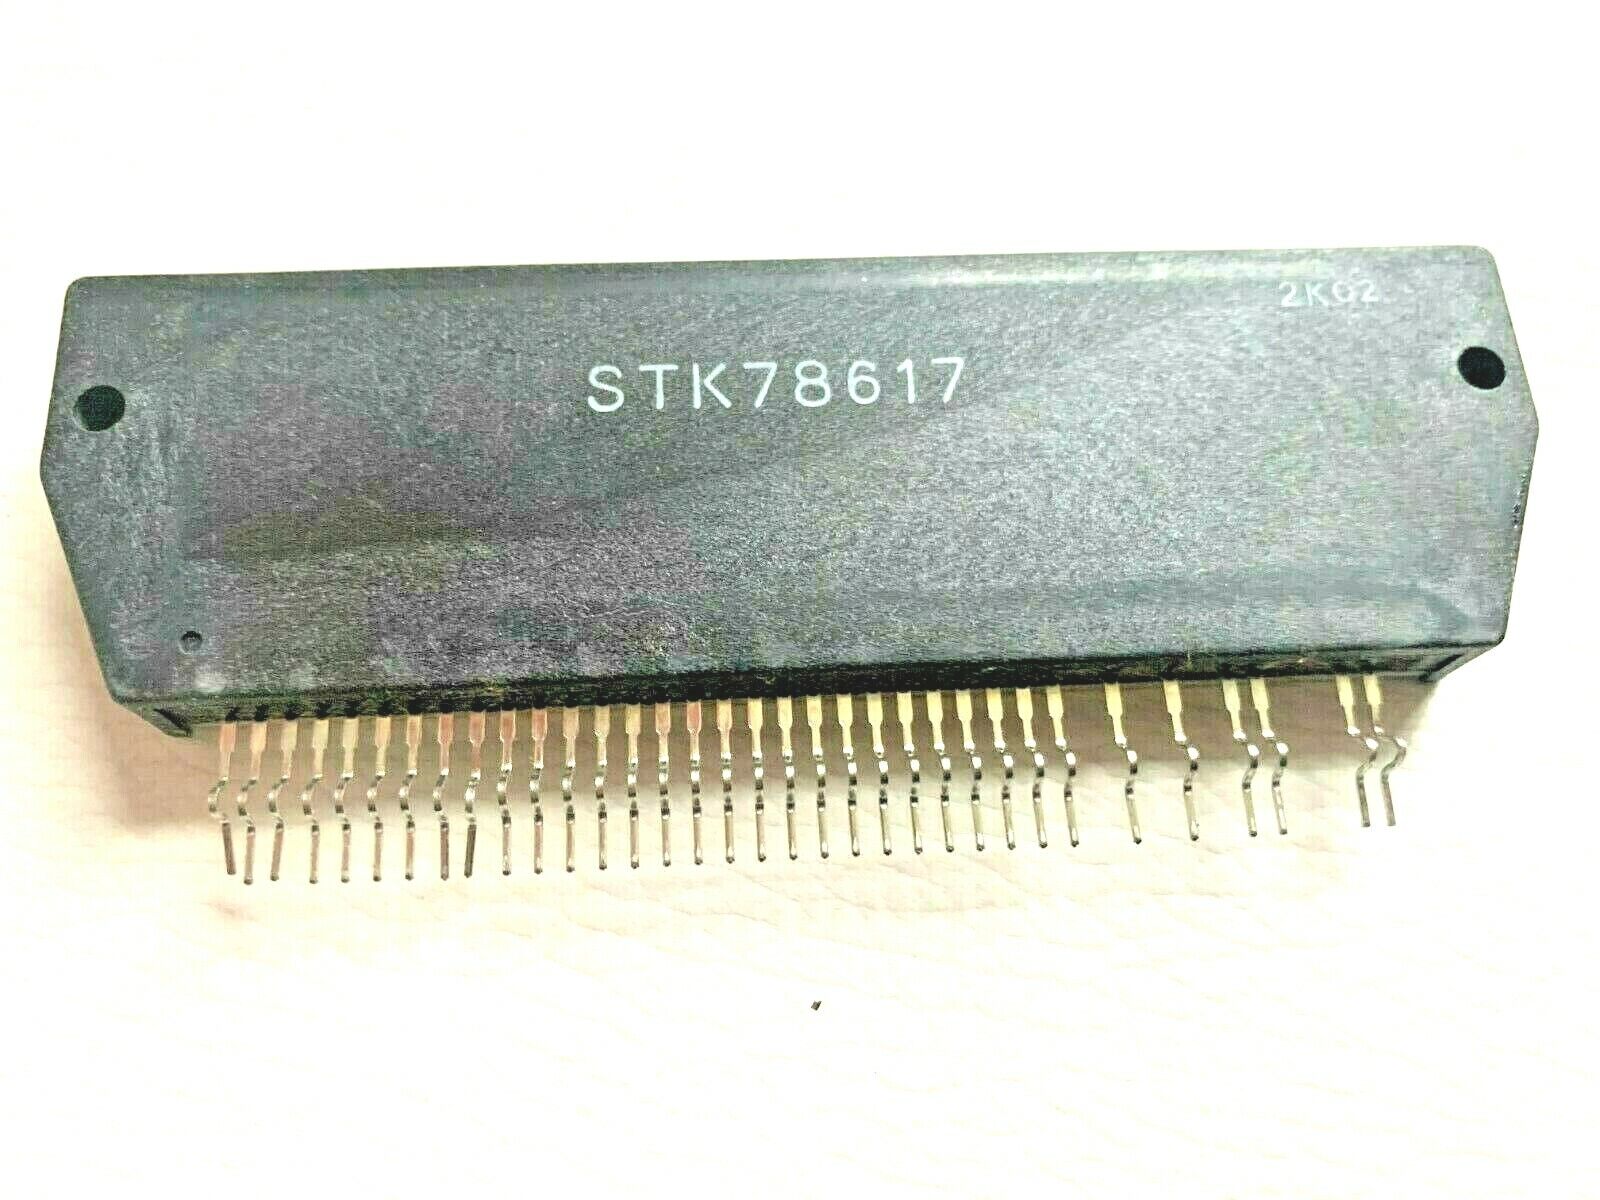  STK78617 + Heat Sink Compound |  within US